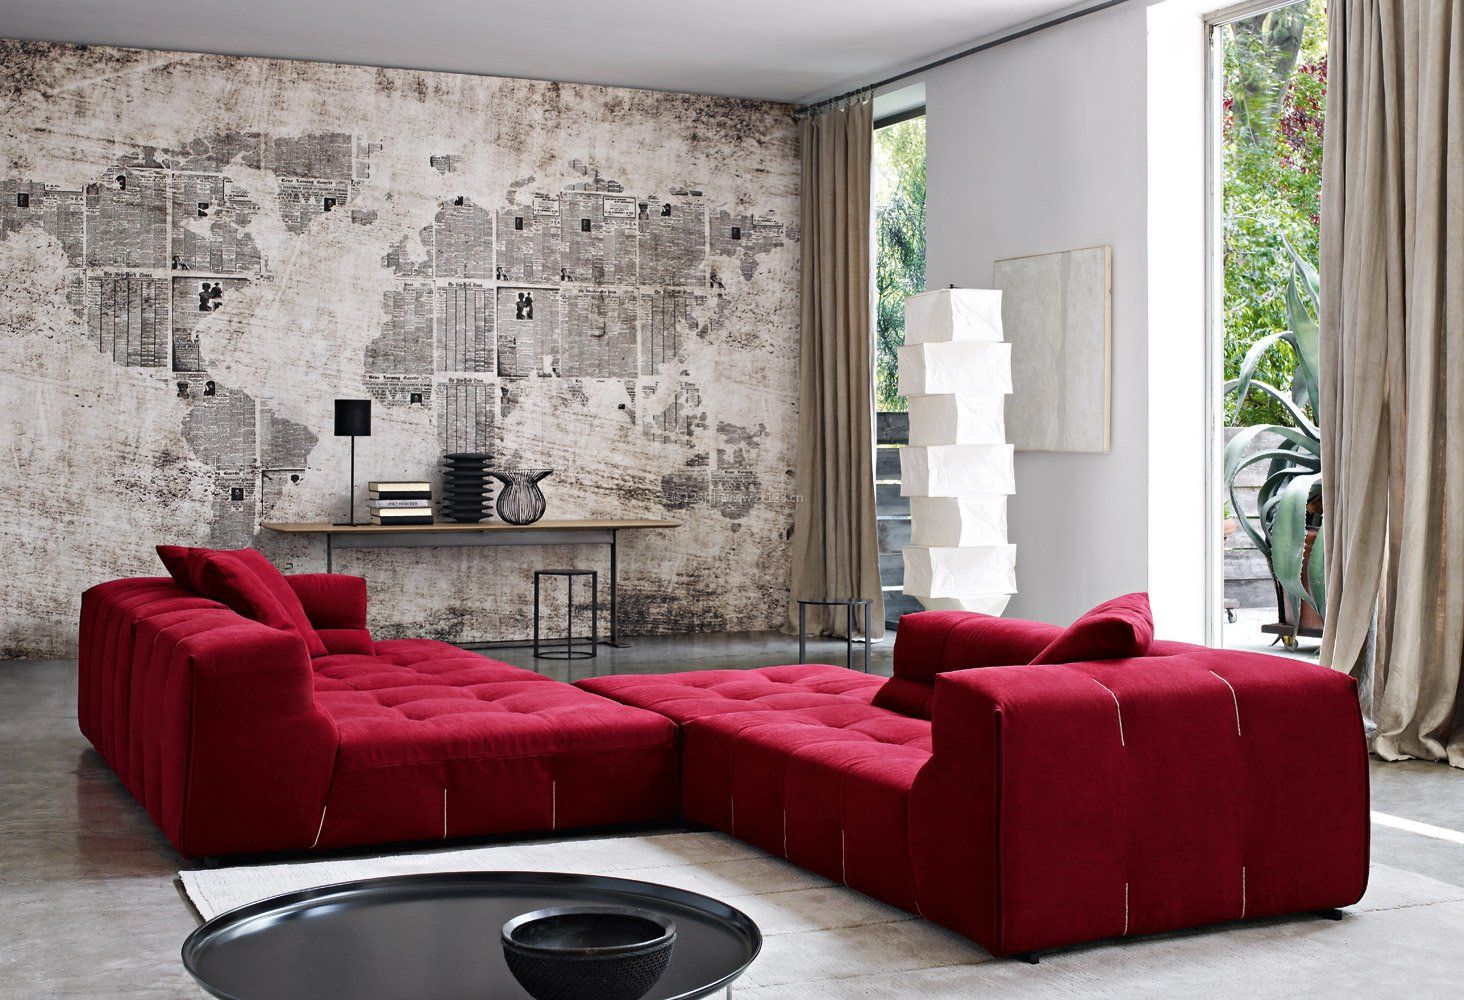 室内后现代风格客厅沙发颜色搭配图片